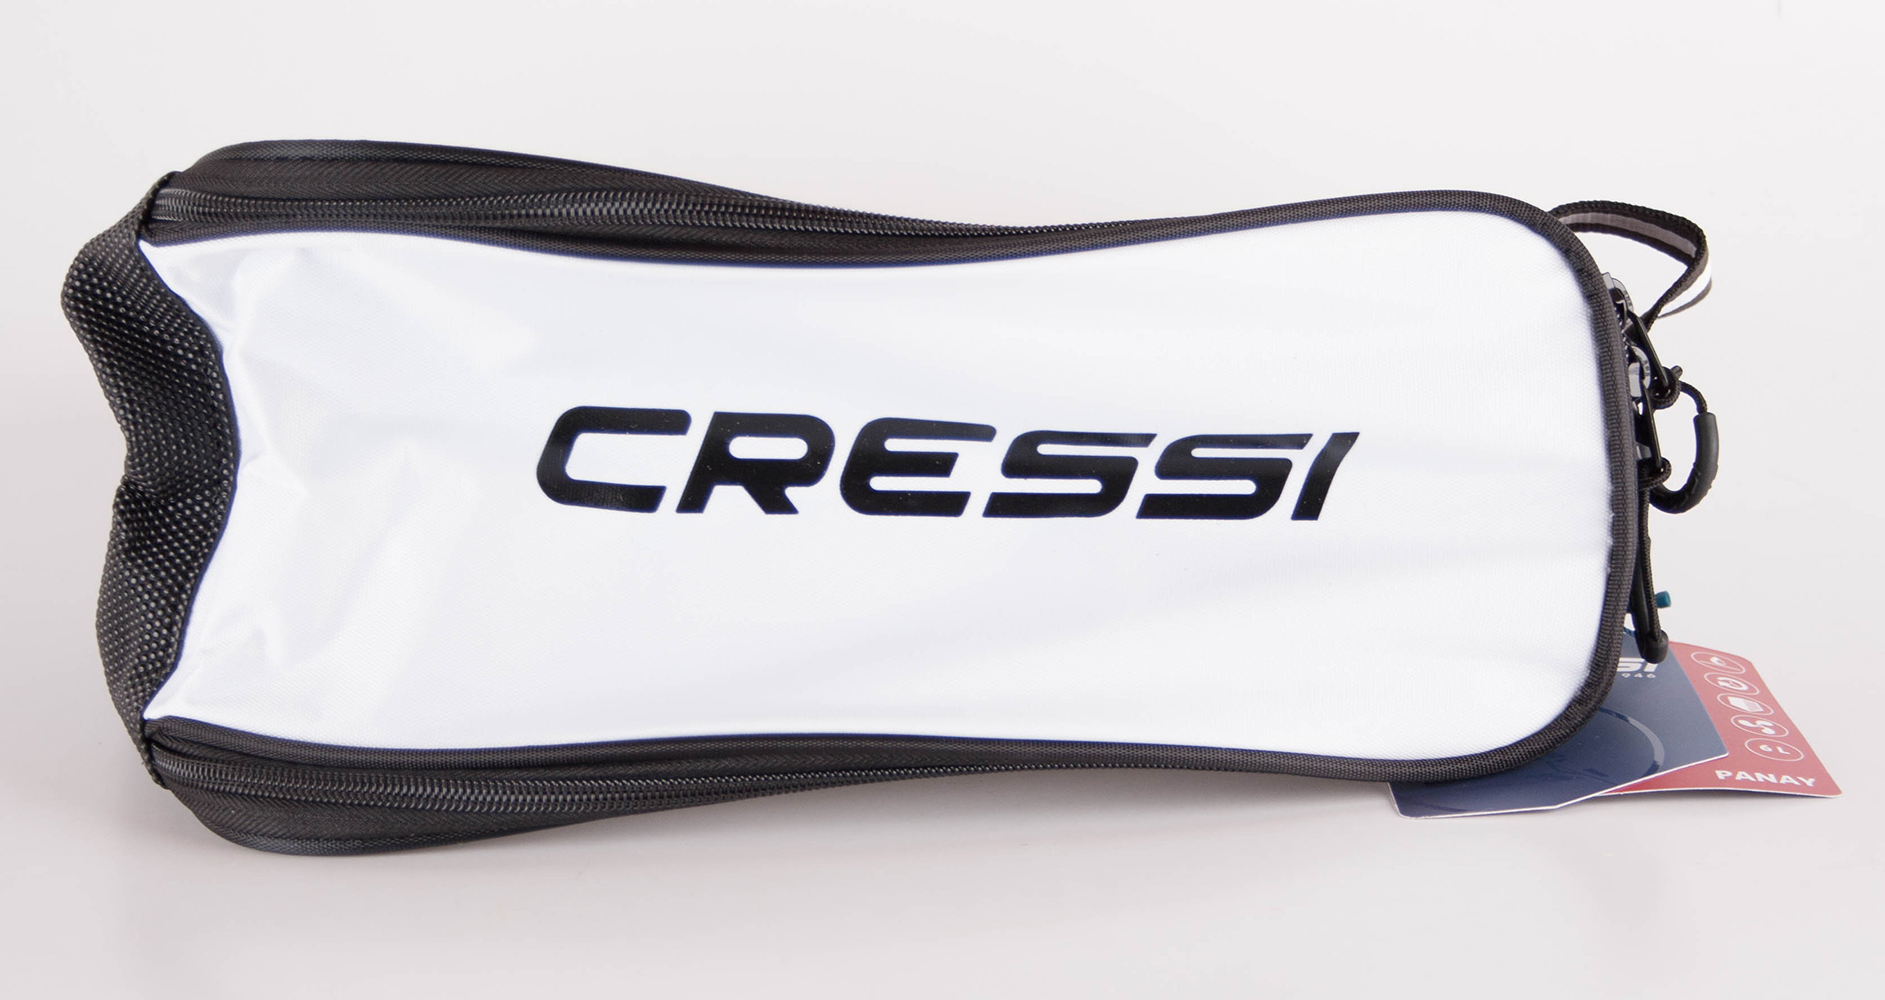 Cressi Panay Bag Sac de Sport Longitudinal Blanc / Noir L 28 x 15 x 12 cm